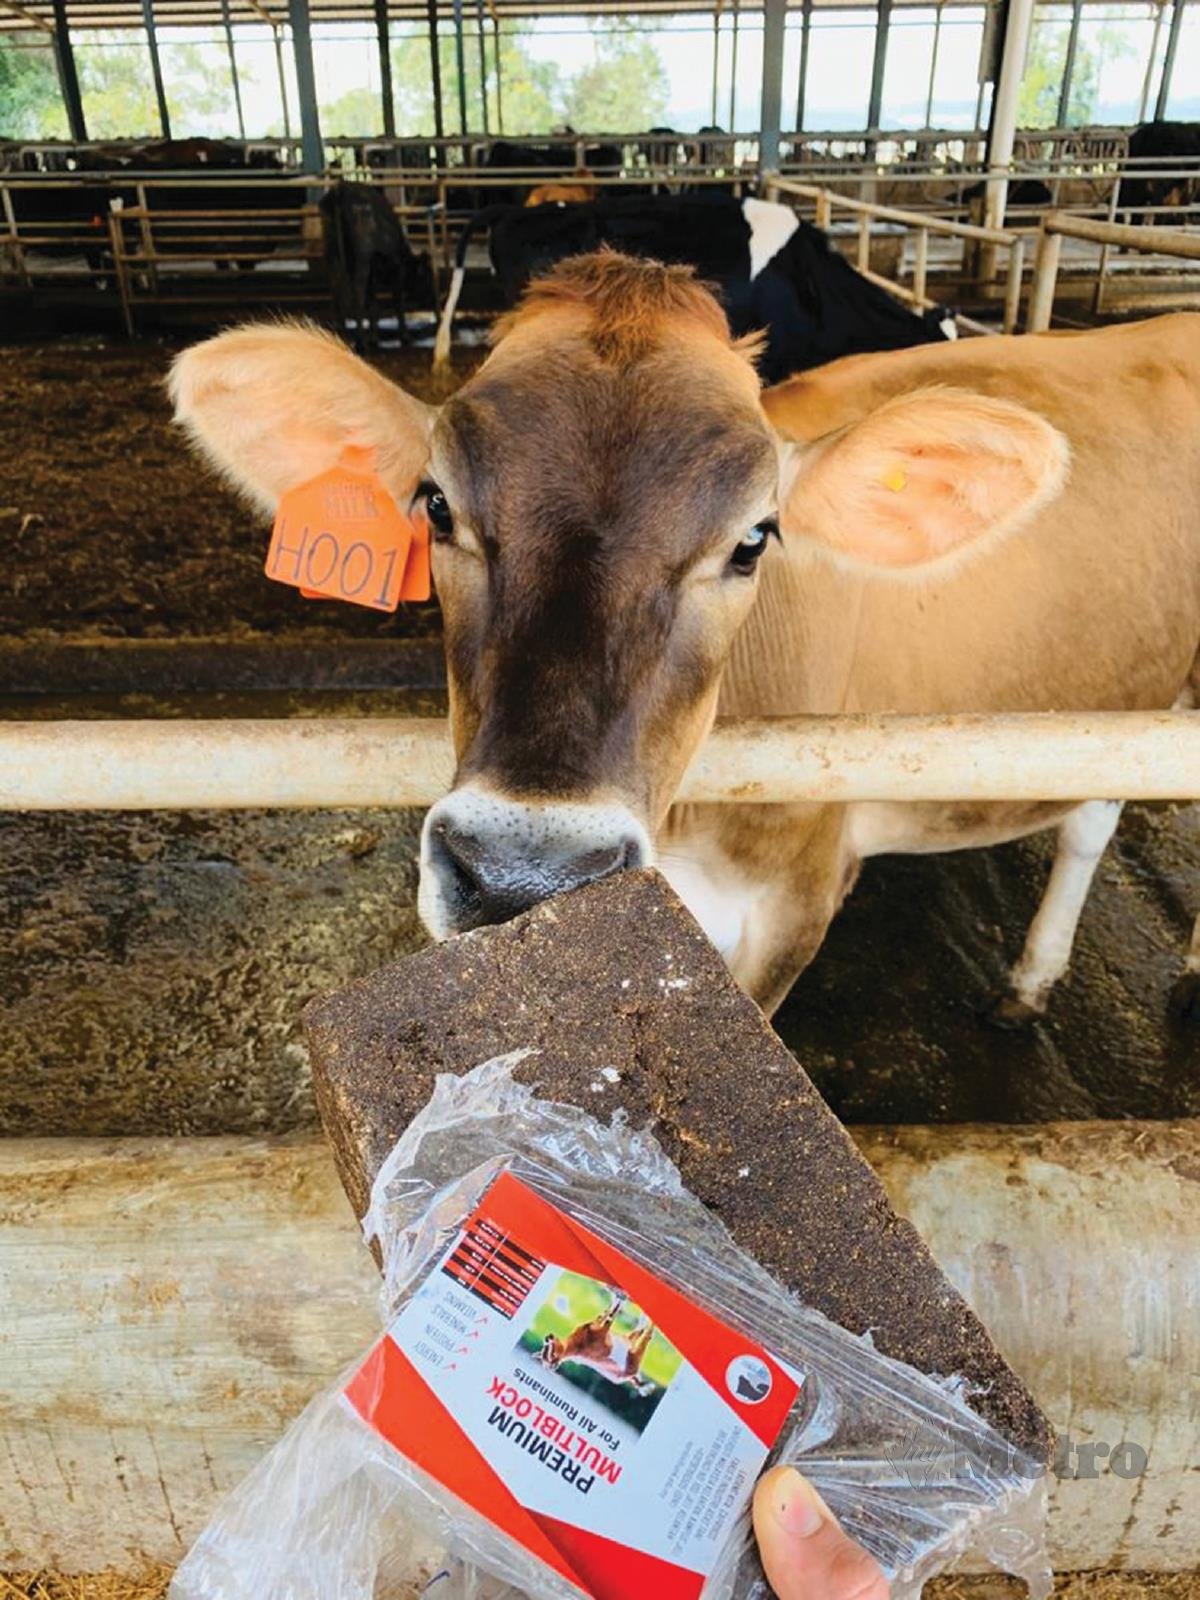 PRODUK CapriBos Multinutrient Blok secara kaedah jilatan mampu meningkatkan pertumbuhan haiwan ruminan seperti lembu dan kambing.